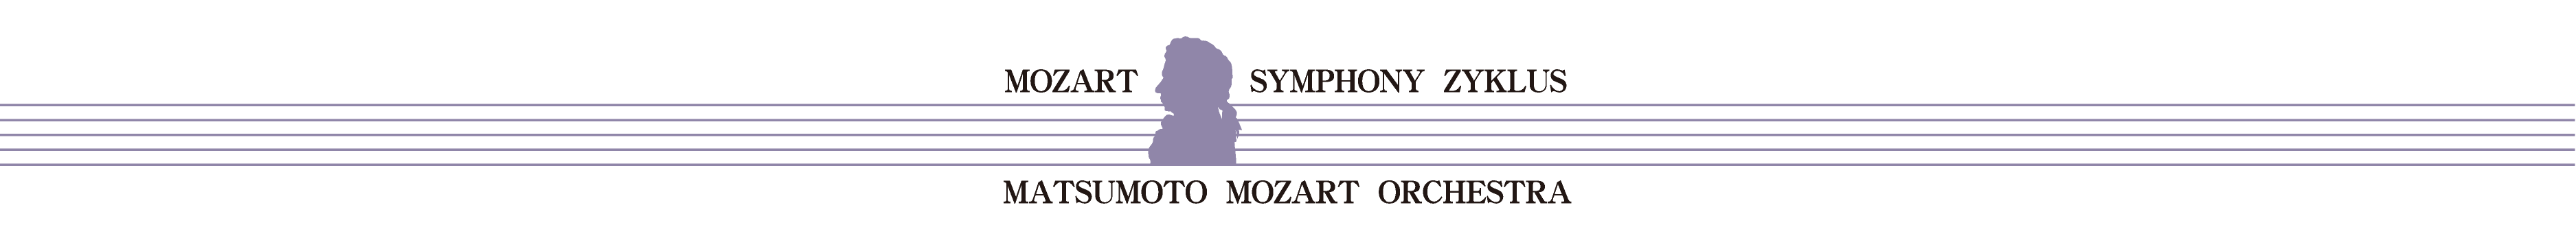 第２回 モーツァルト交響曲・全曲演奏会